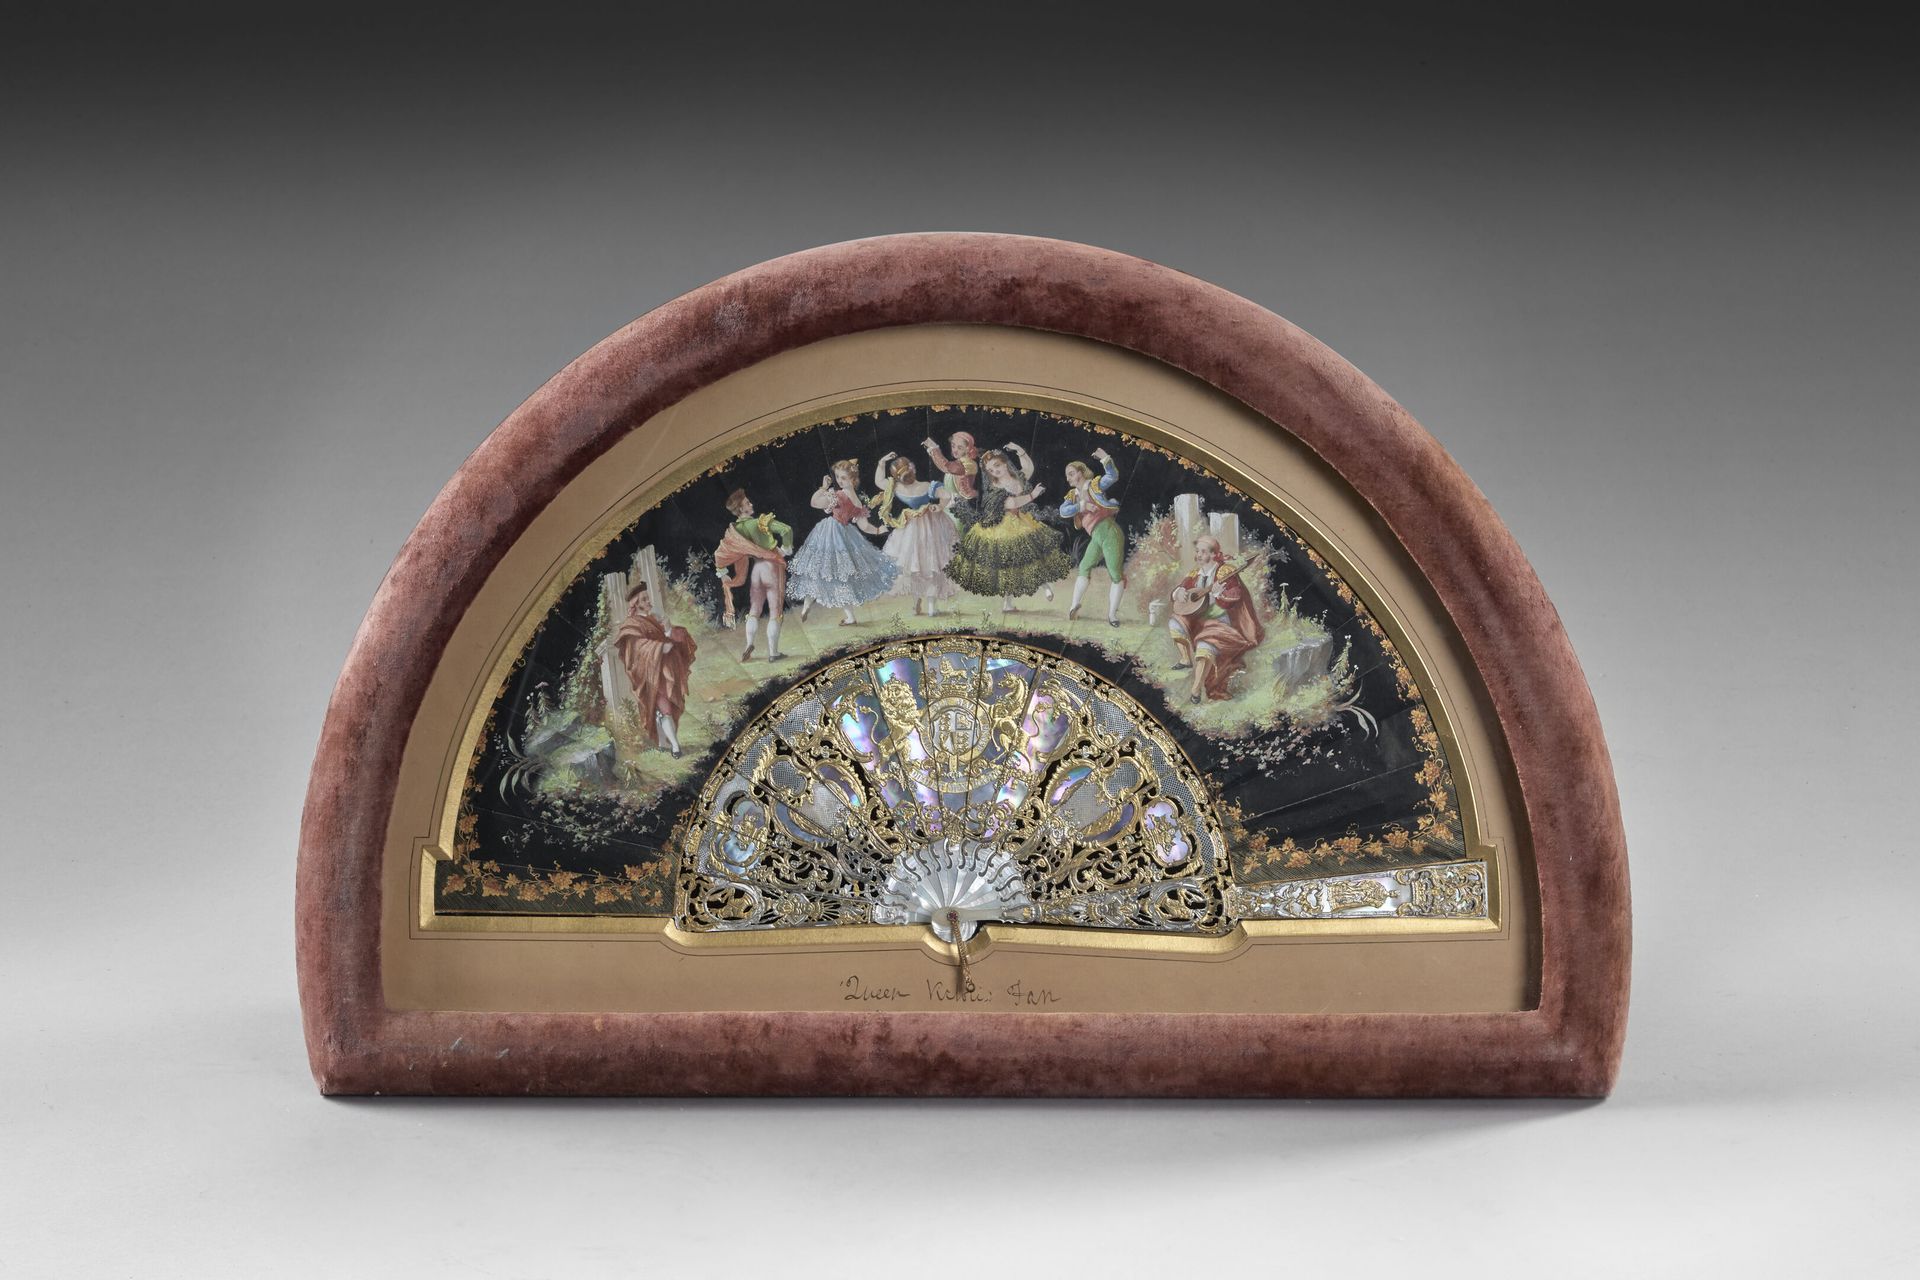 Null 维多利亚女王的武器、
"Honi soit qui mal y pense", 约1850-1860年

折叠式扇面，纸片在黑色背景上画有西班牙风格的&hellip;